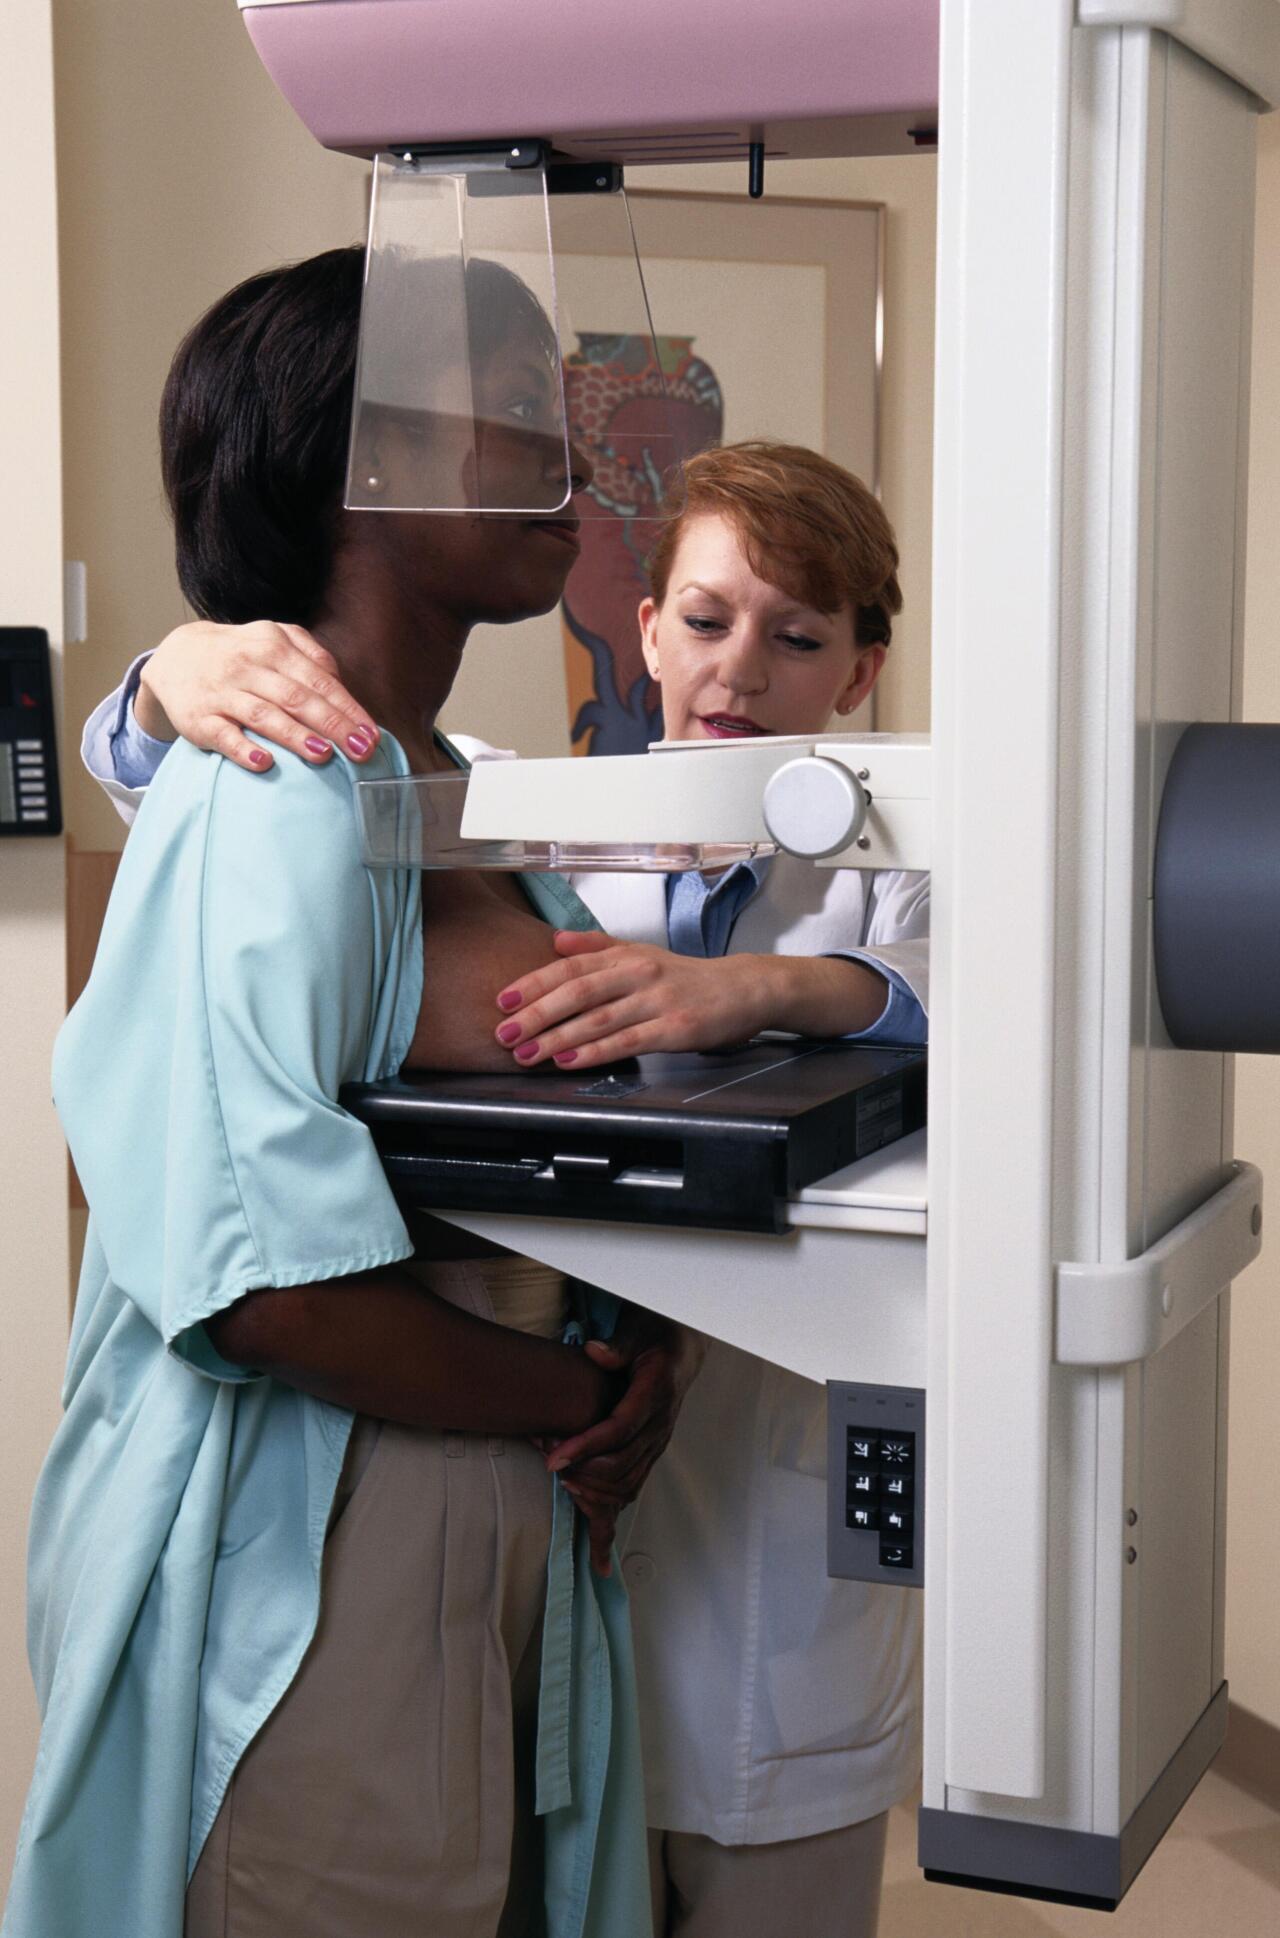 Mamografia, X izpietan oinarritutako ohiko diagnosi-teknika